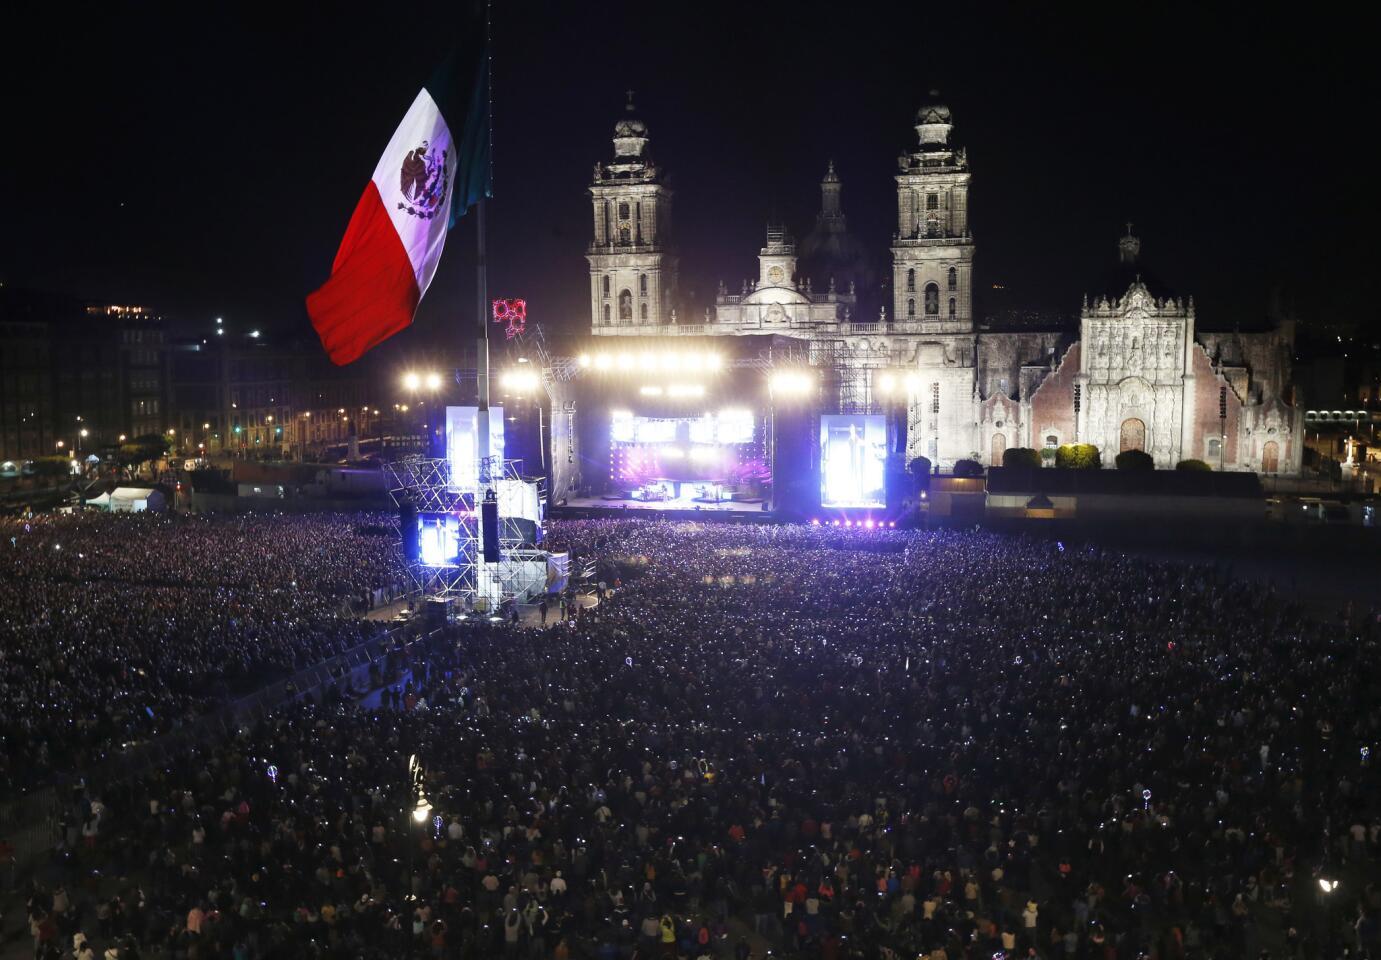 El público reunido para ver a Ricky Martin durante su concierto gratuito en el Zócalo de la Ciudad de México el sábado 25 de noviembre de 2017. (Foto AP/Marco Ugarte) ** Usable by HOY, ELSENT and SD Only **